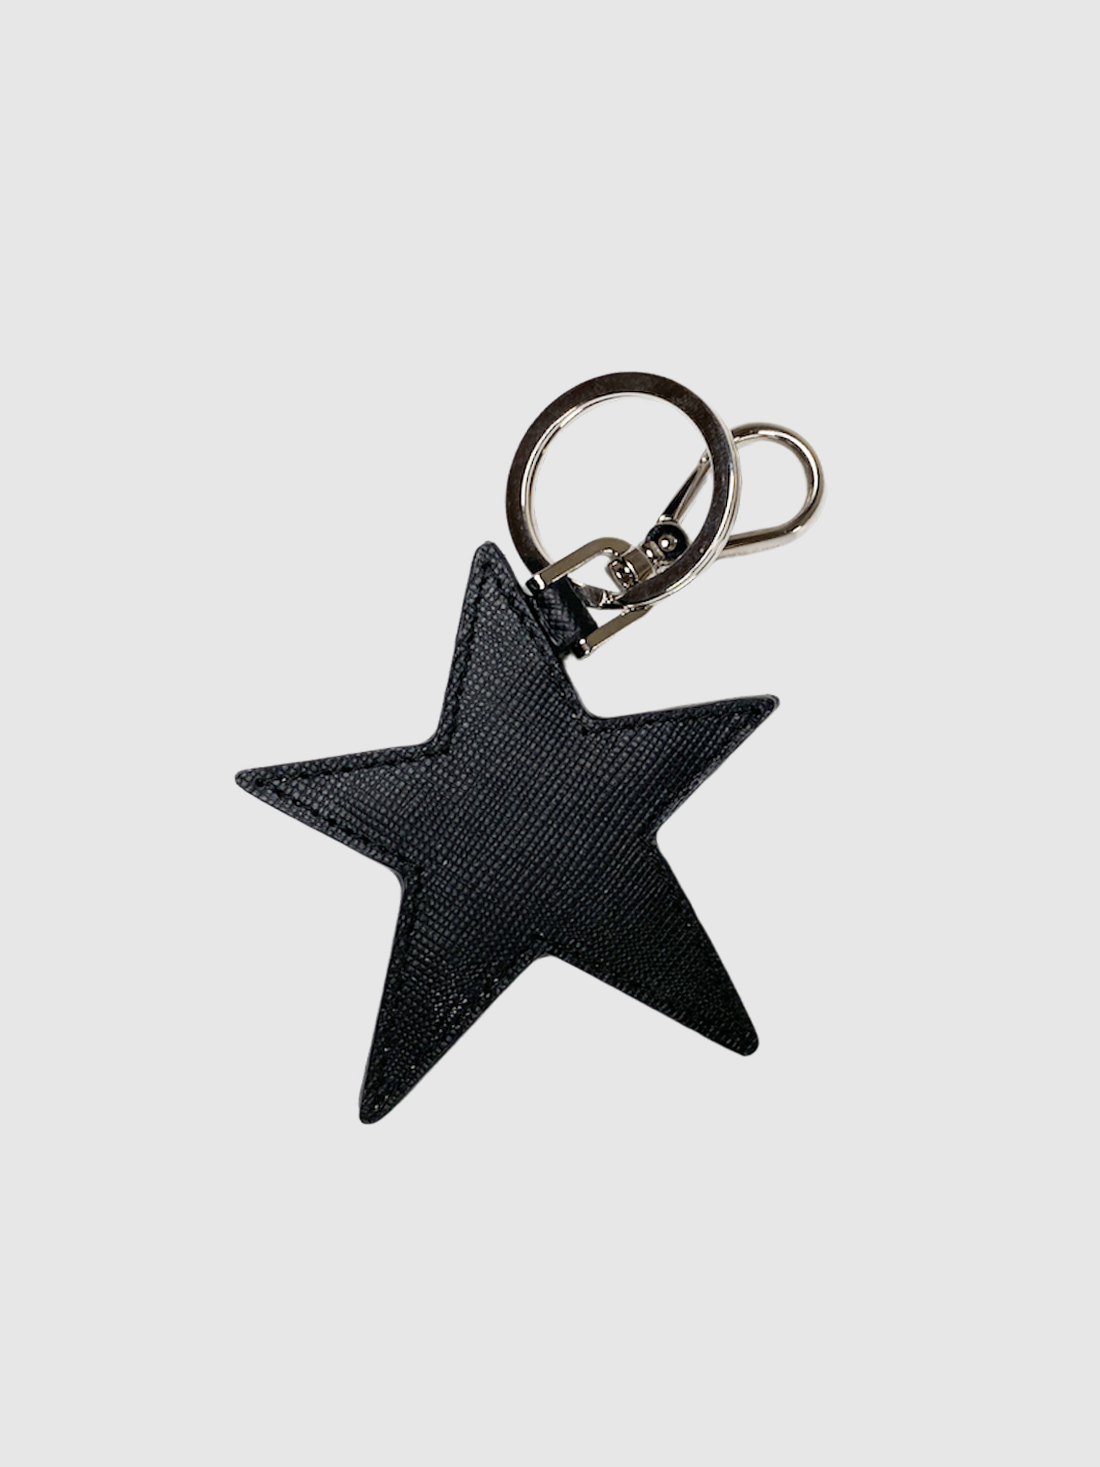 Prada Black Leather Star Studded Keychain